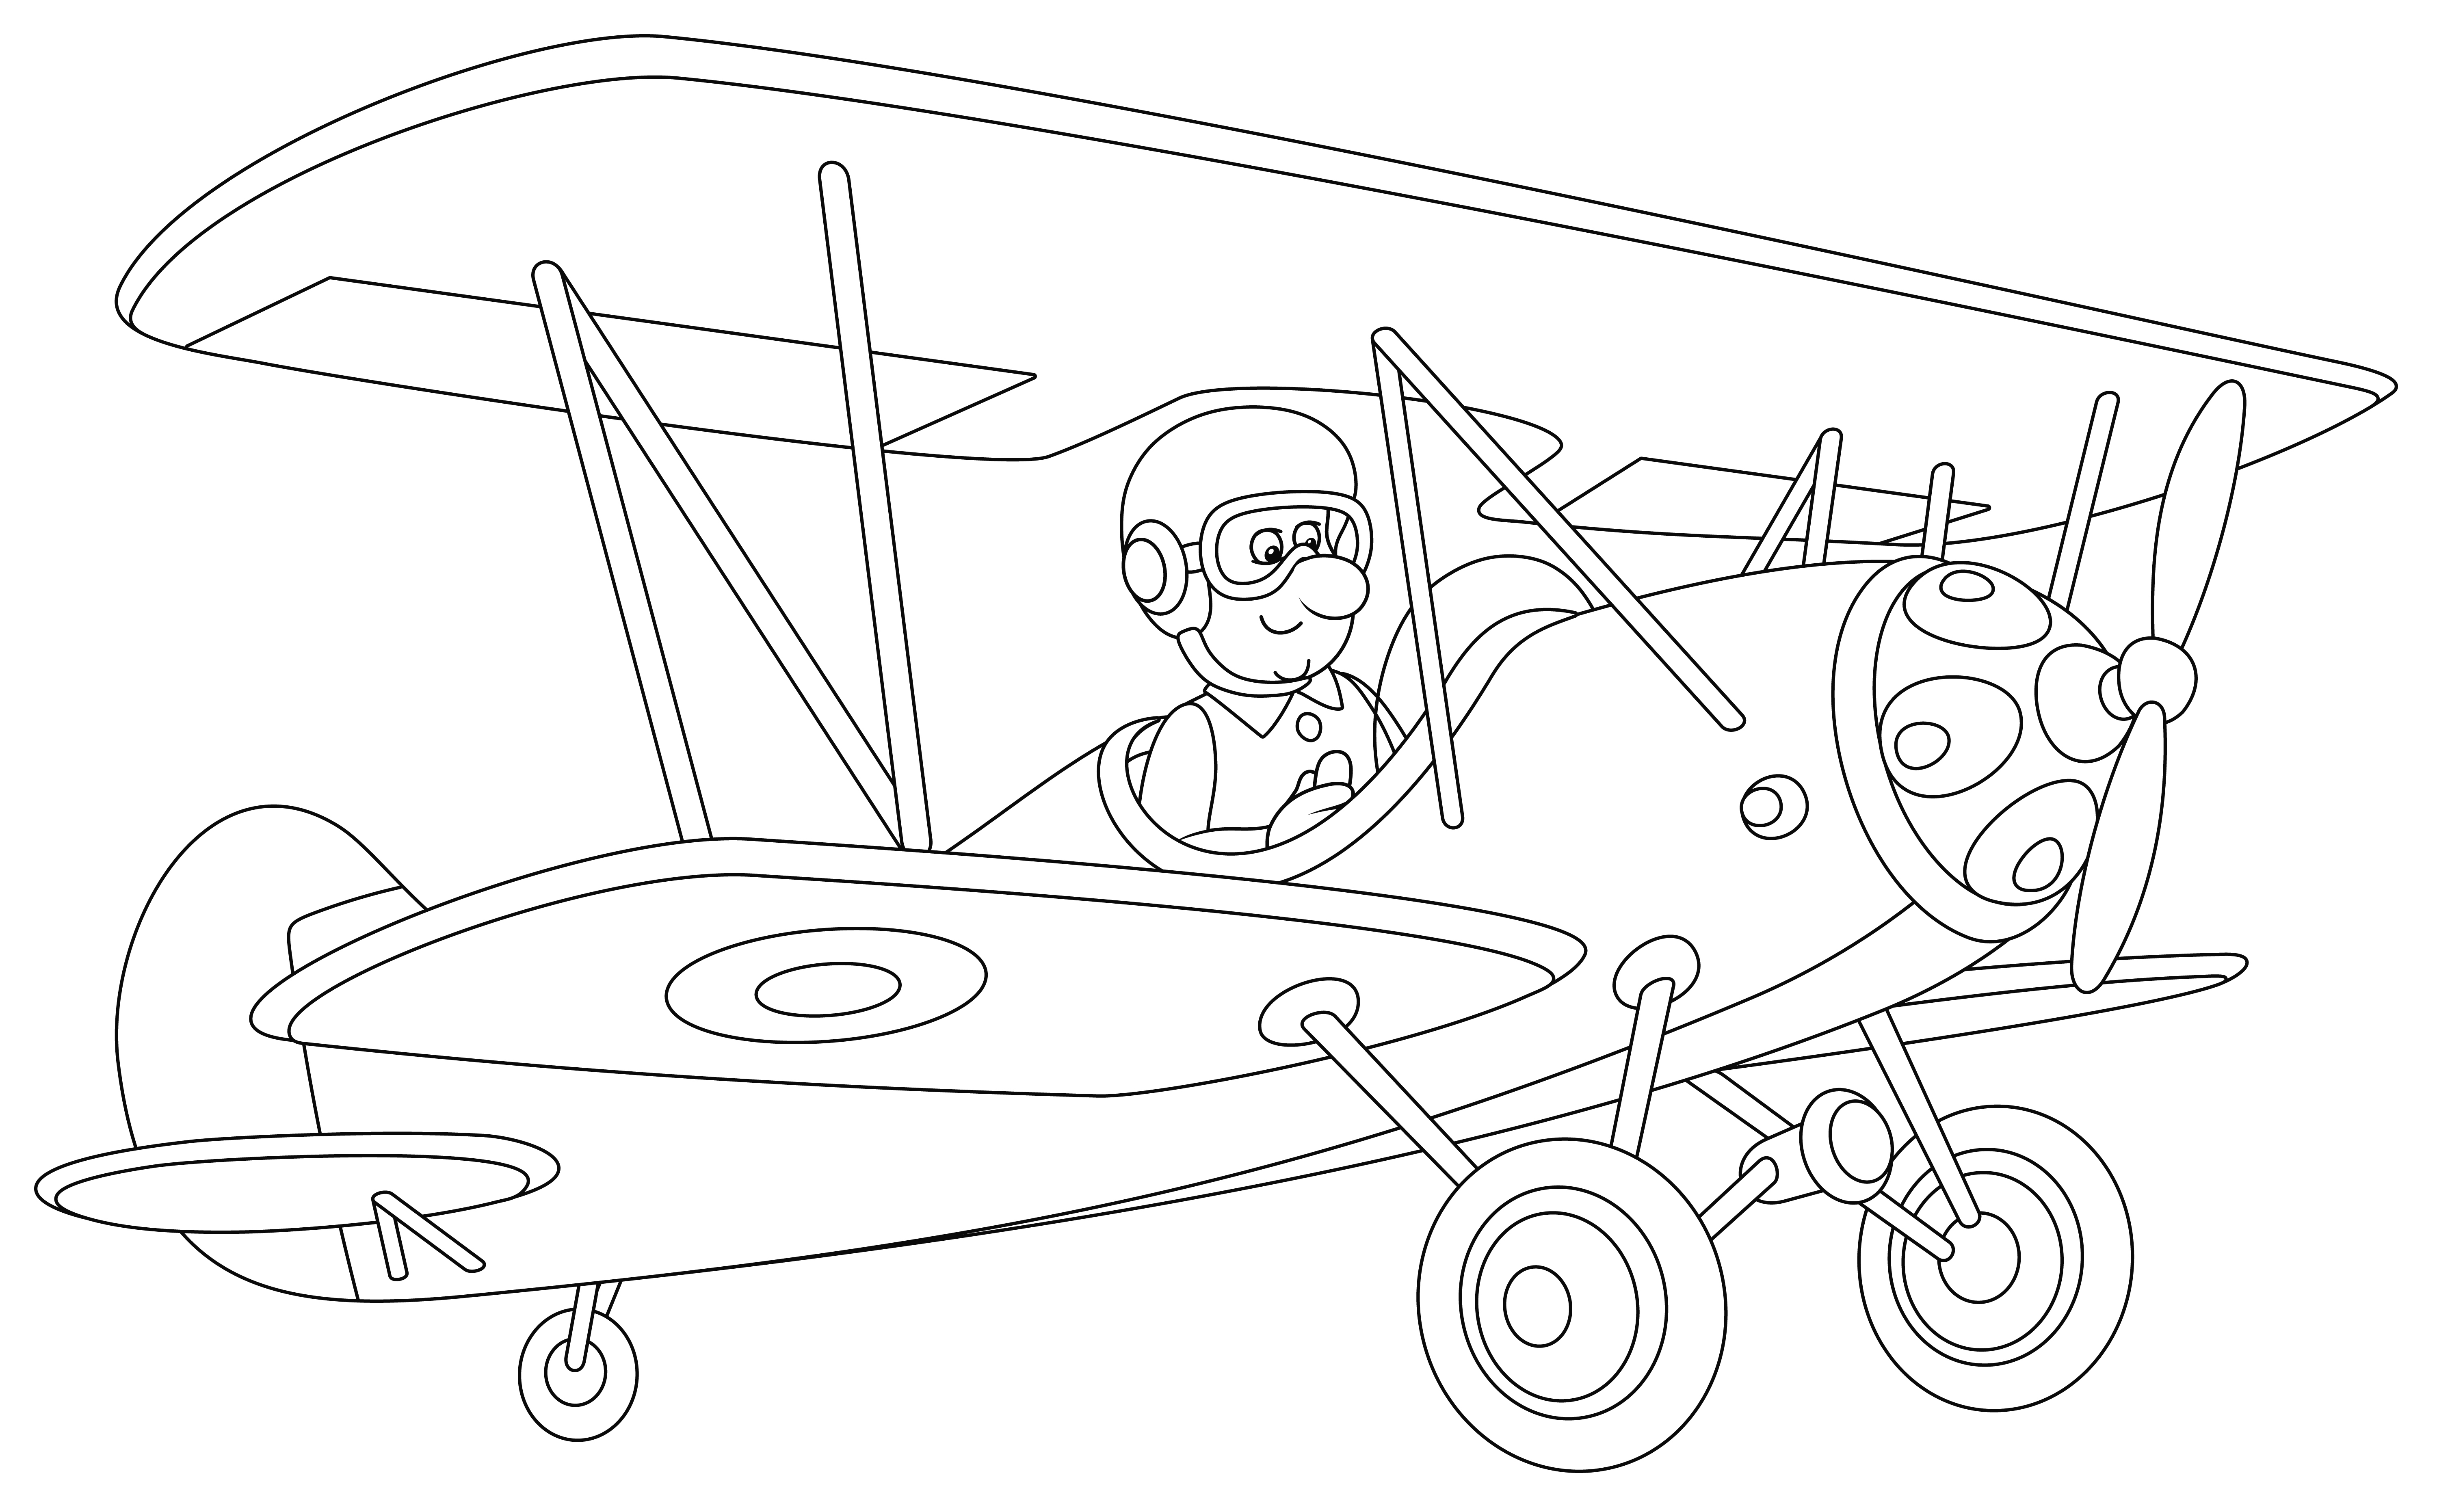 Раскраска самолет с пилотом в шлеме формата А4 в высоком качестве